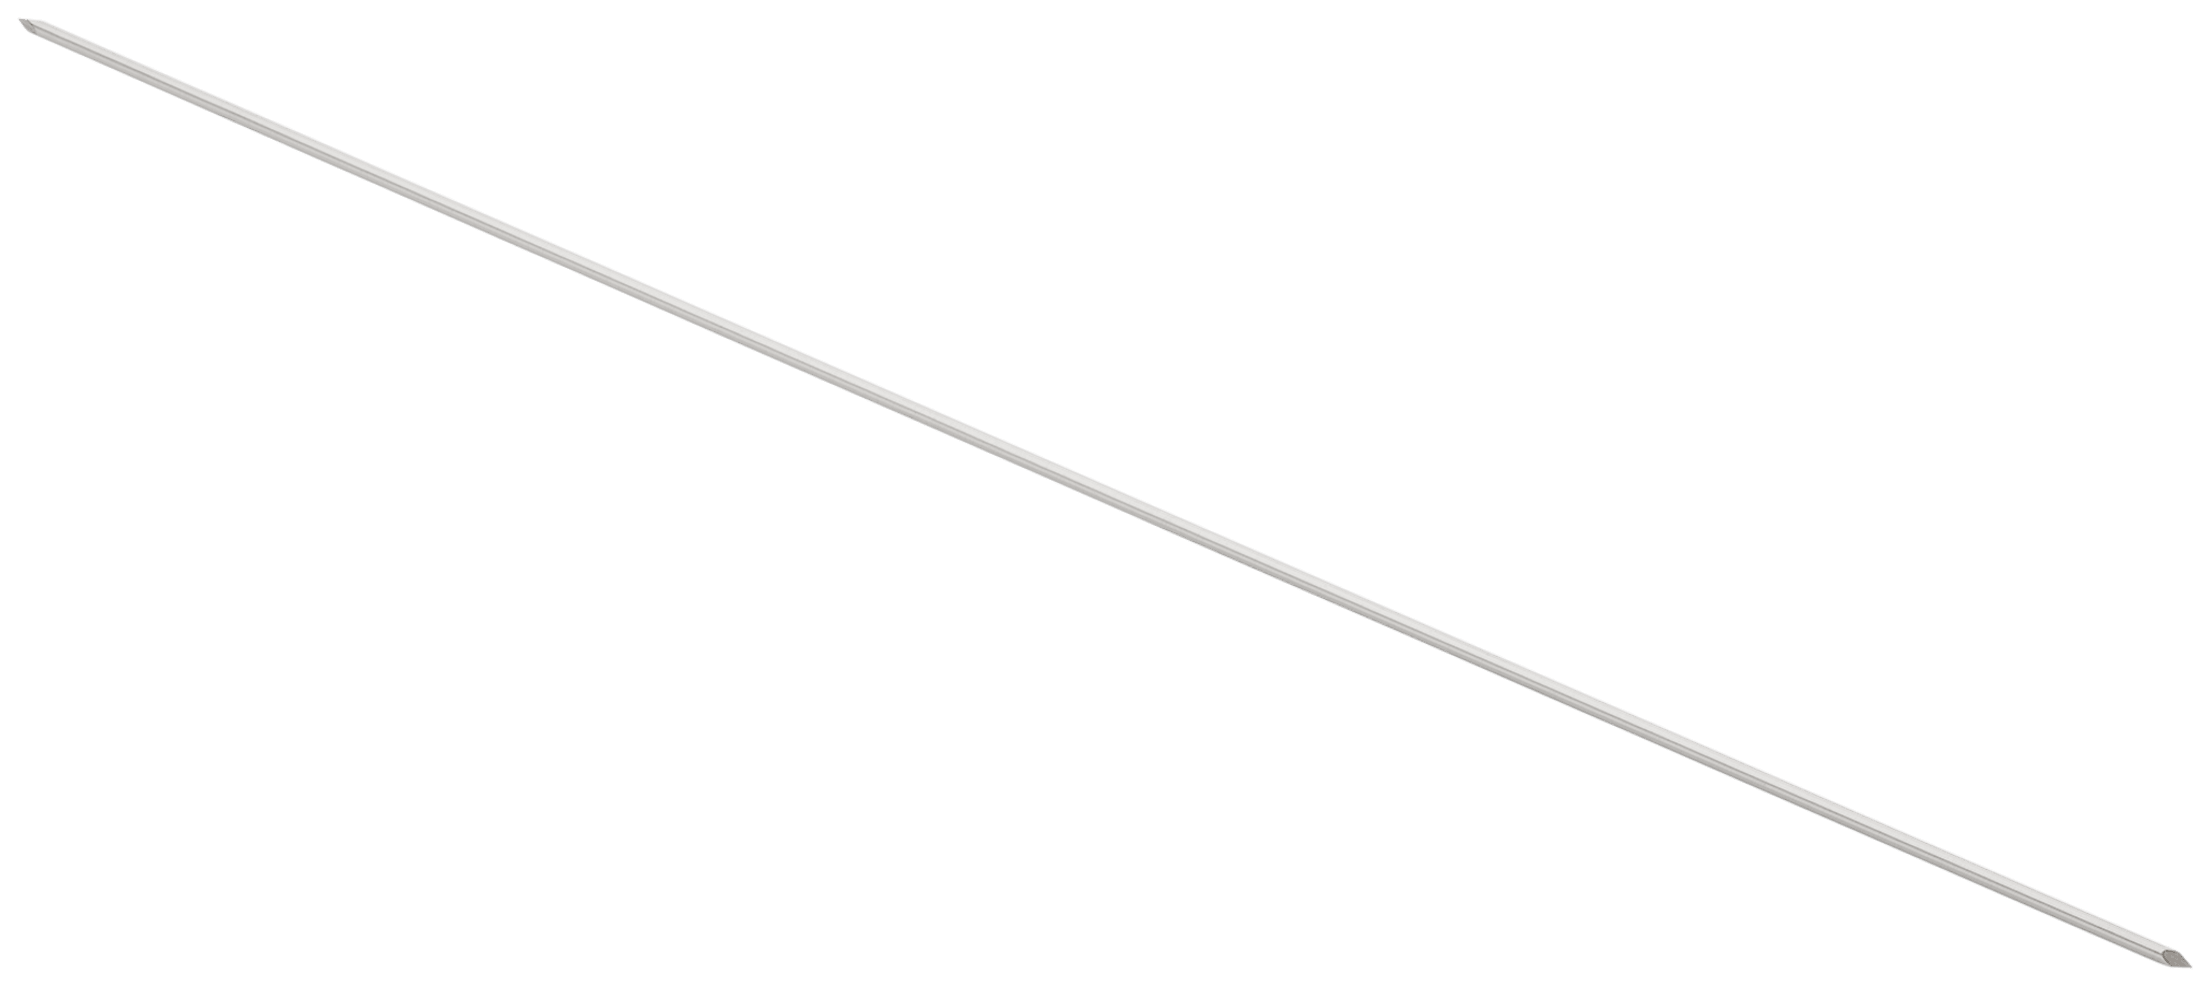 Nitinolführungsdraht, mit Doppeltrokarspitze, 1.6 mm x 235 mm, steril